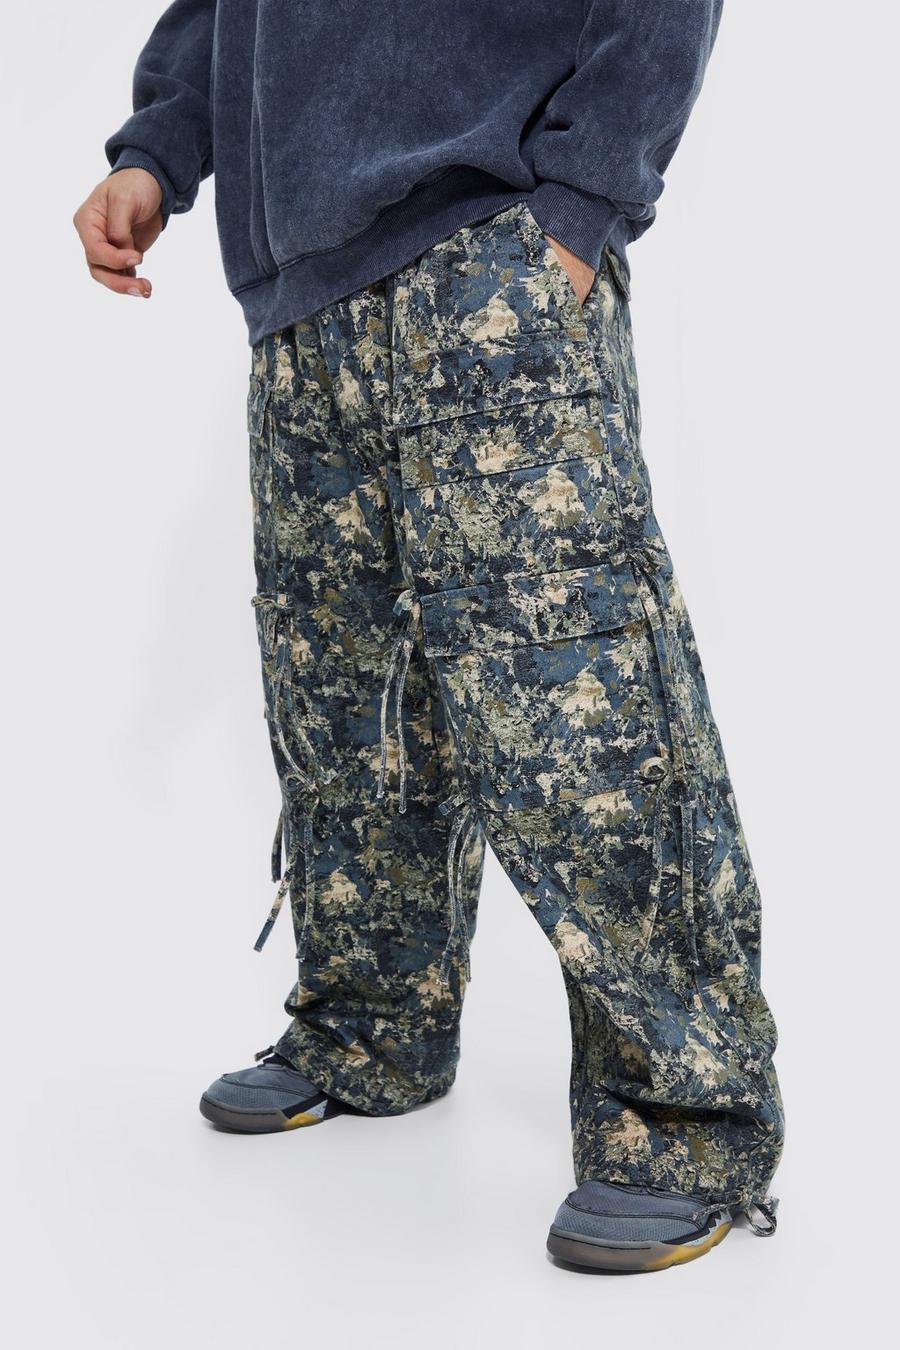 Pantaloni Cargo in fantasia militare a calzata ampia con vita elasticizzata, Camo